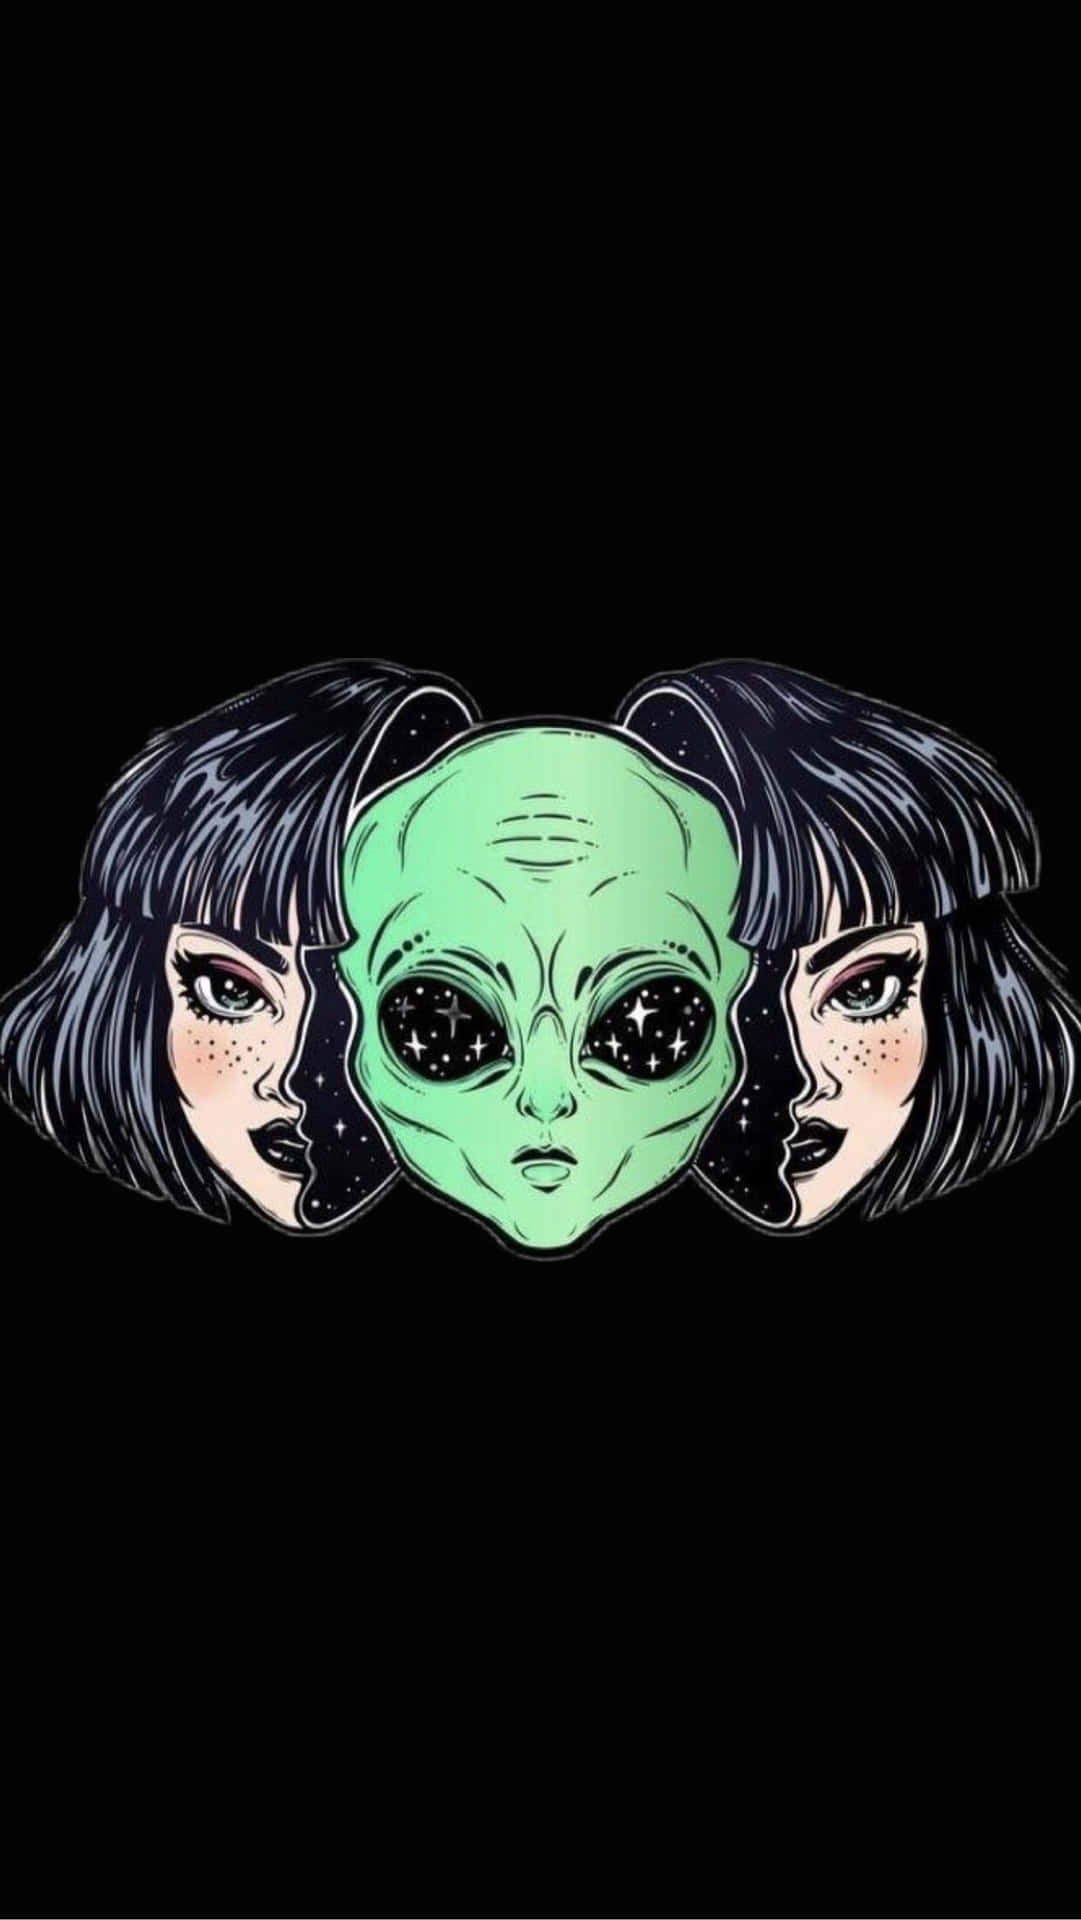 Grunge Anime Girl And Alien Wallpaper